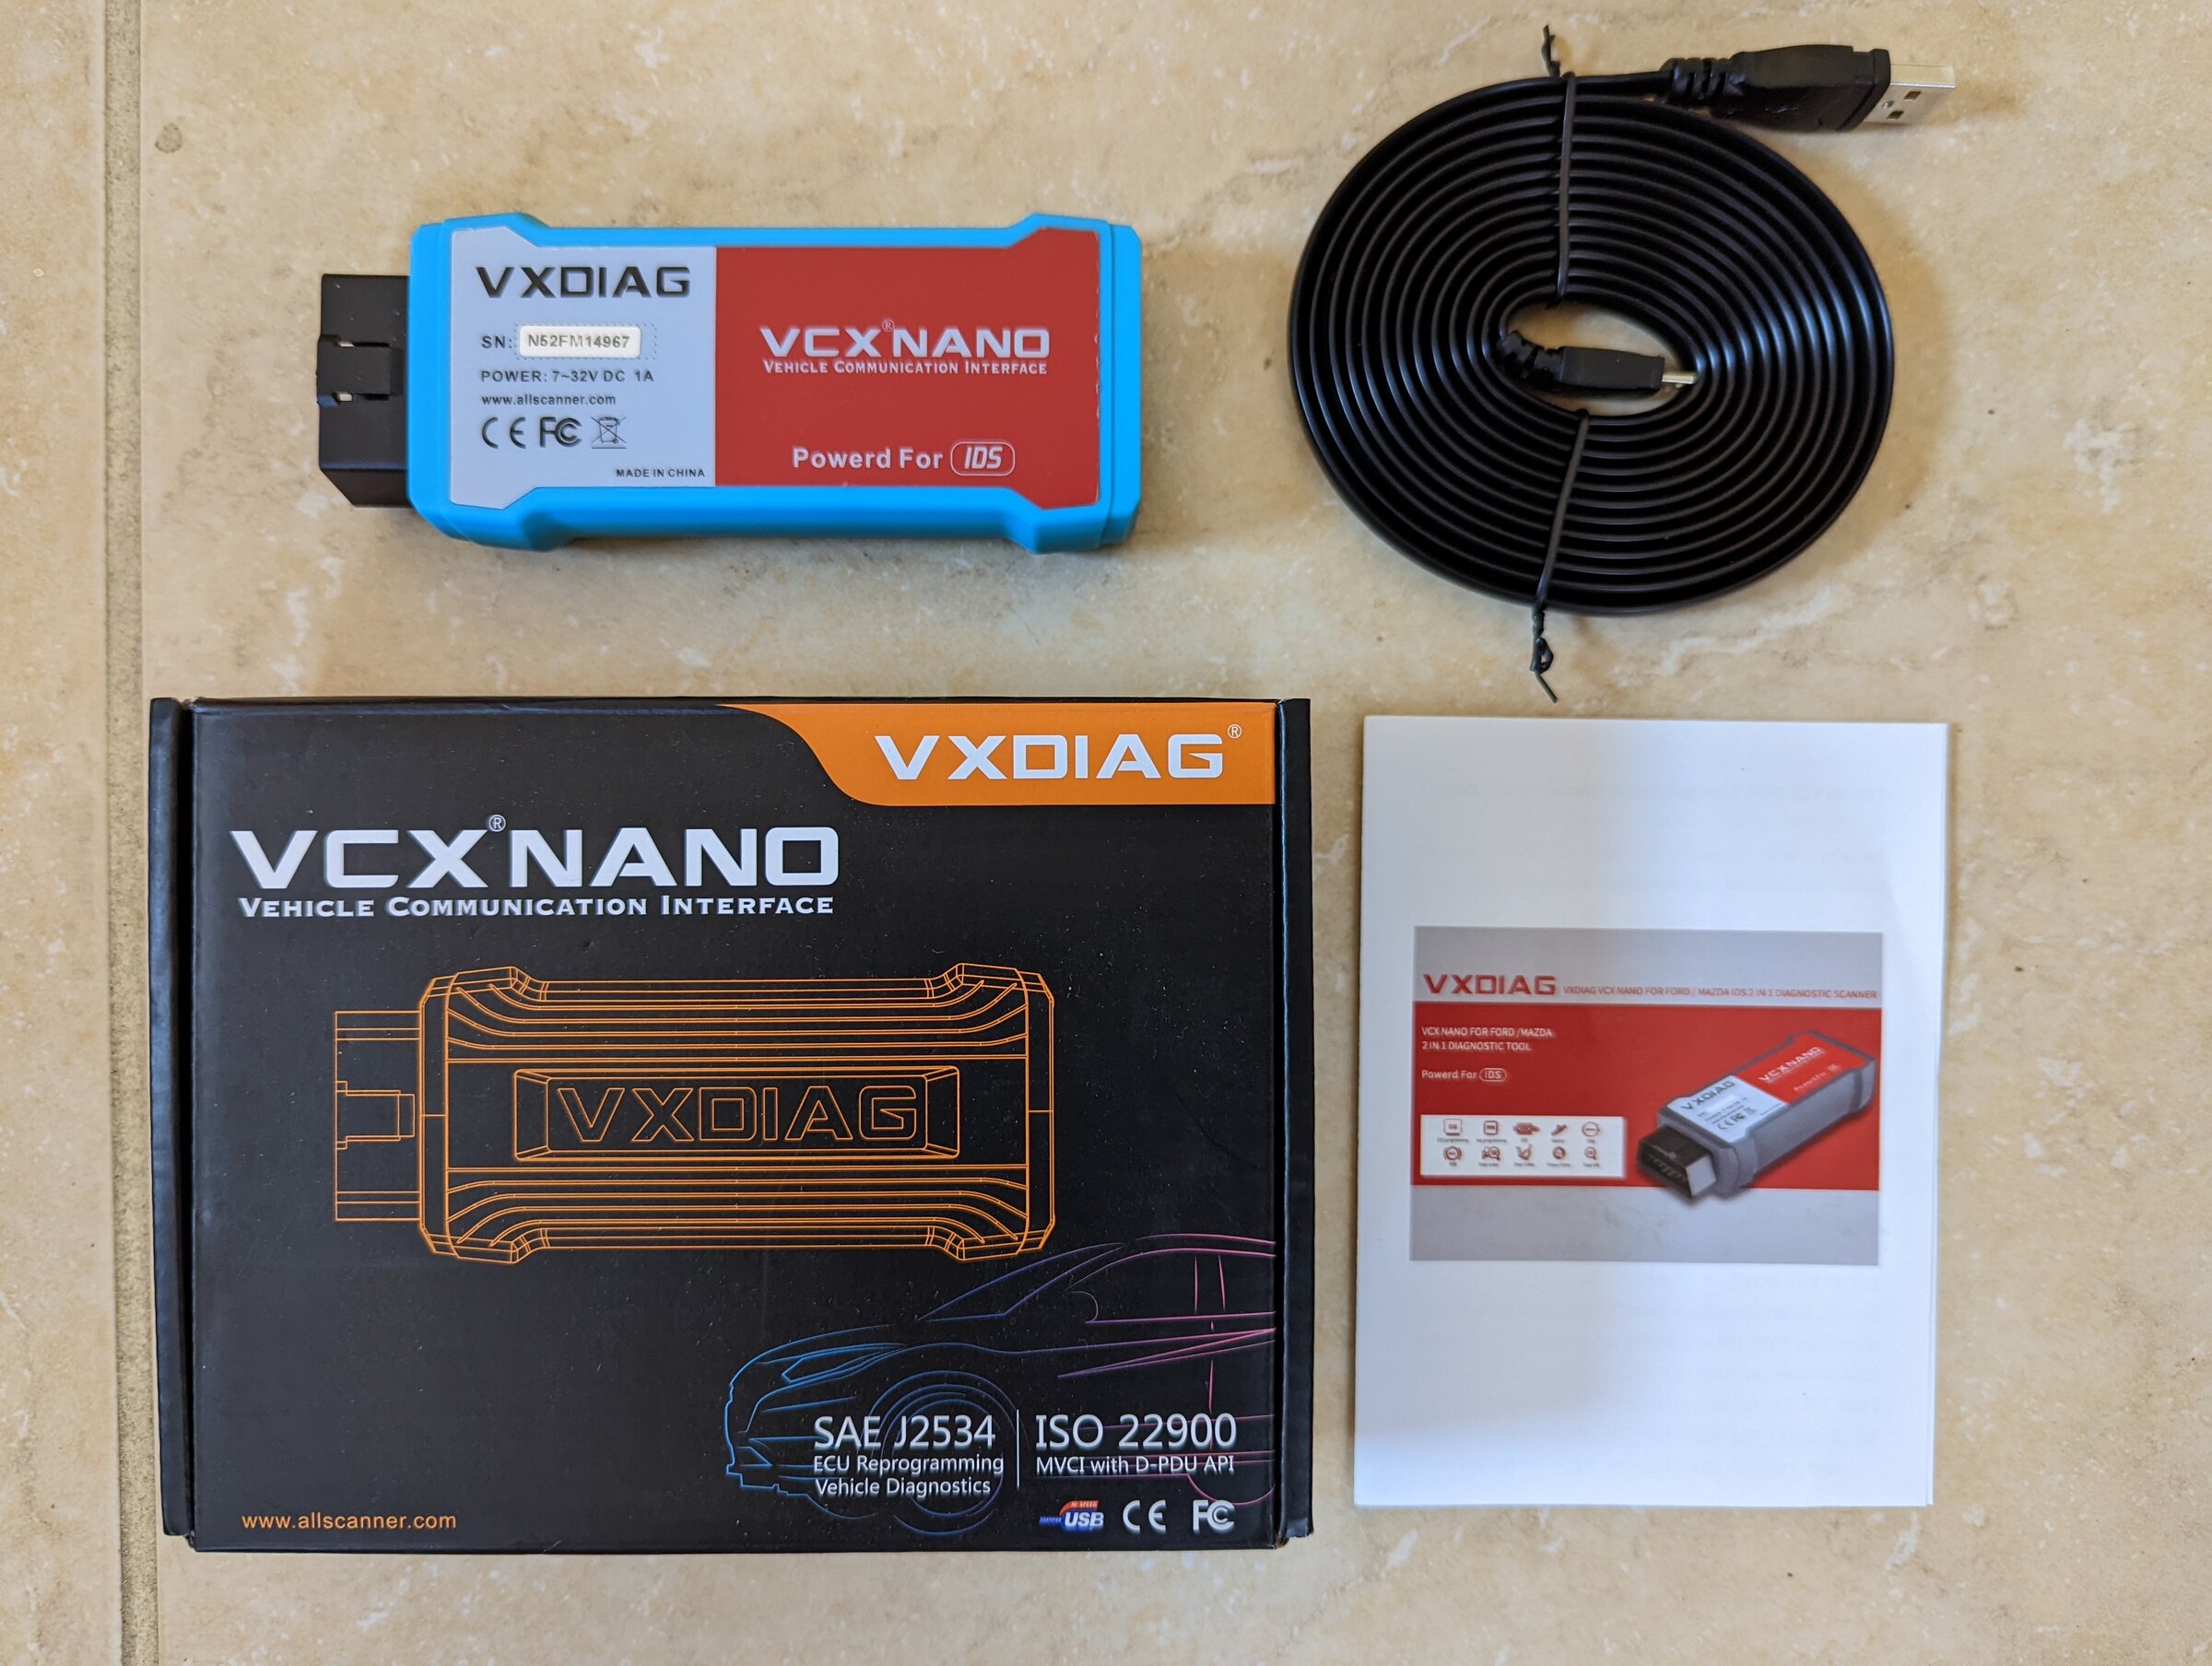 Ford F-150 VCX Nano WiFi Version PXL_20220321_212205087